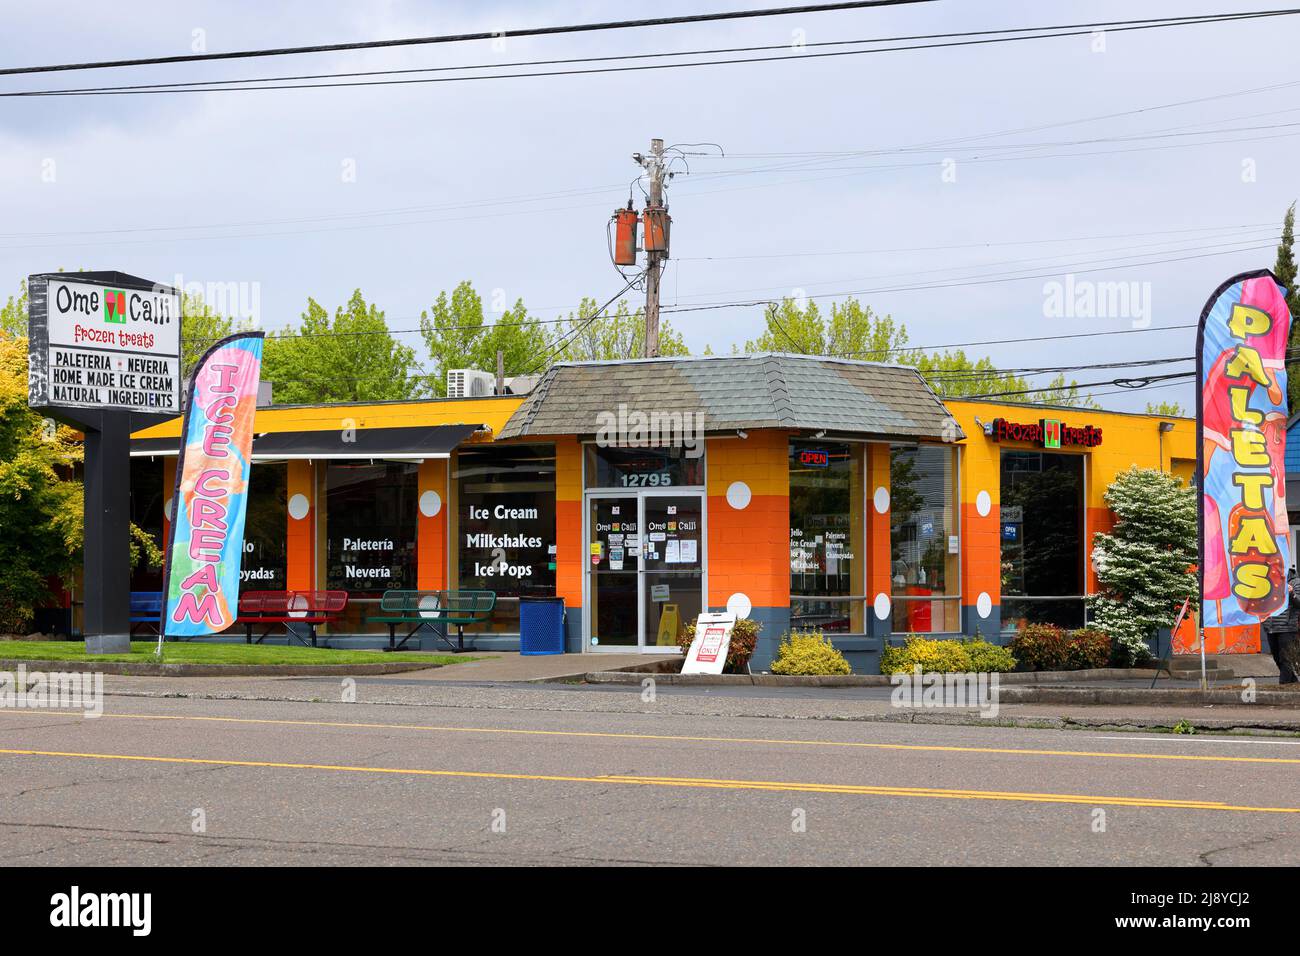 OME Calli, 12795 SW Canyon Rd, façade de Beaverton photo d'une glace mexicaine, et magasin de popsicle. ome calli paliseteria y neveria, Oregon Banque D'Images